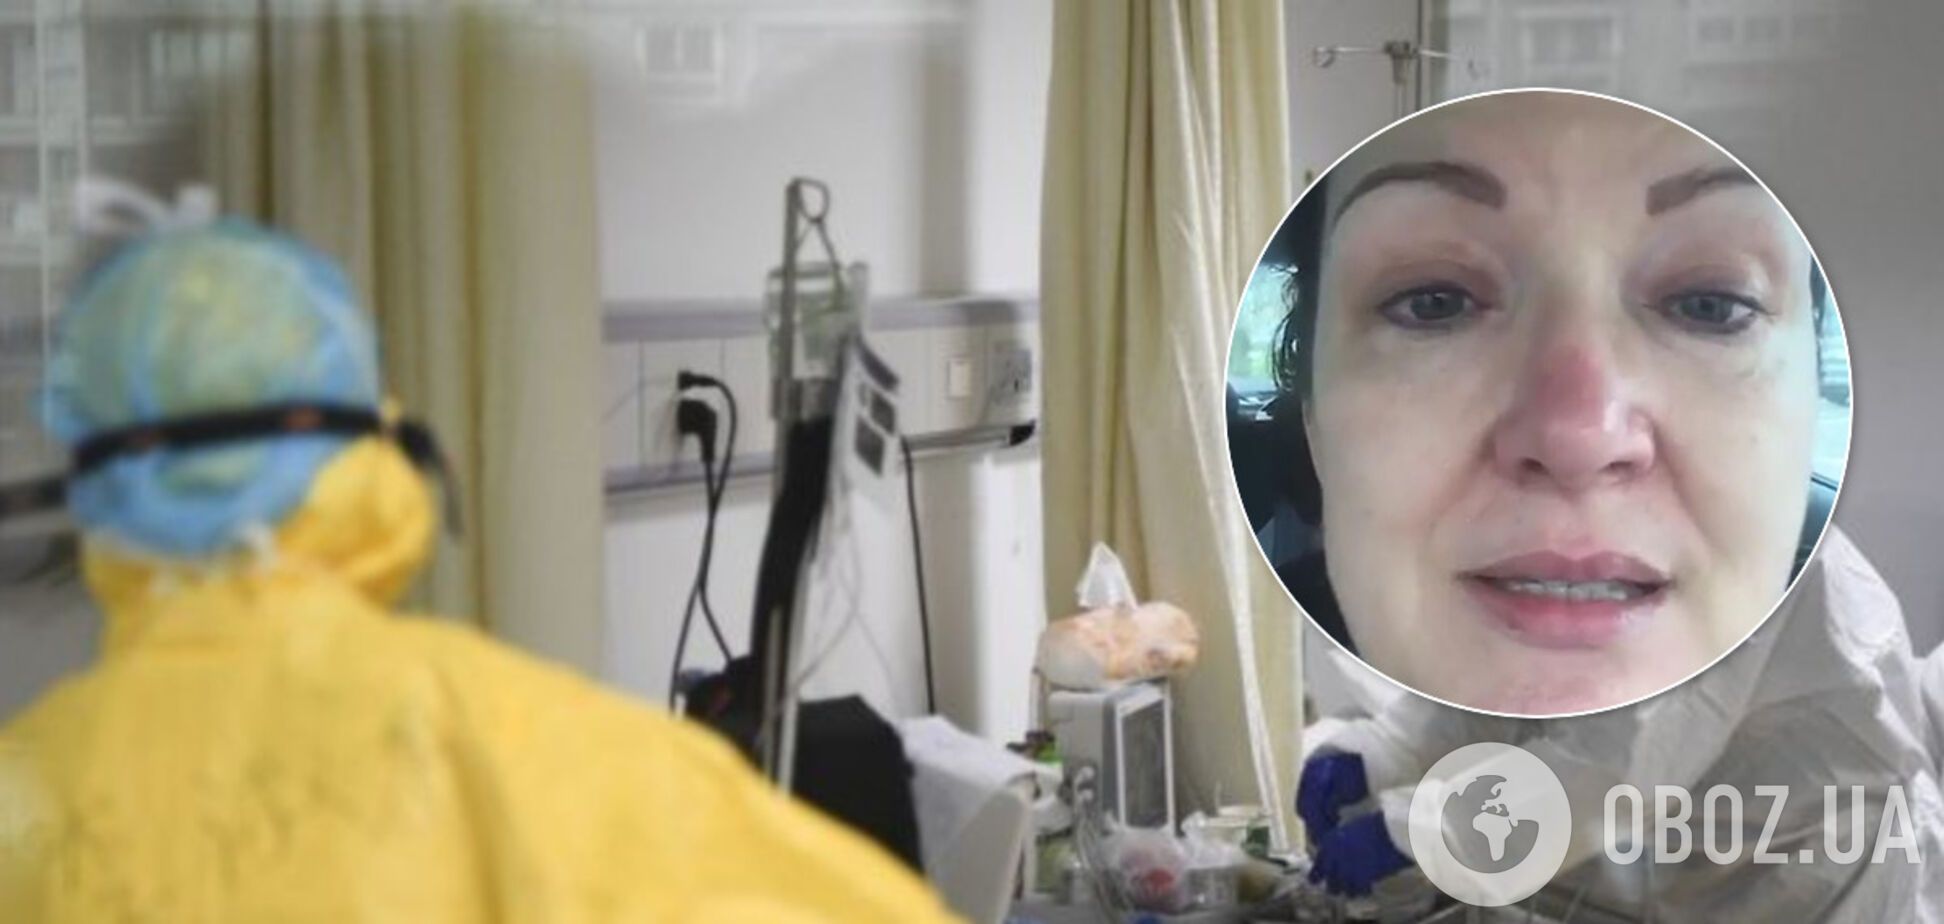 'Кажется, мы проигрываем битву': заплаканная медсестра сделала признание о борьбе с COVID-19